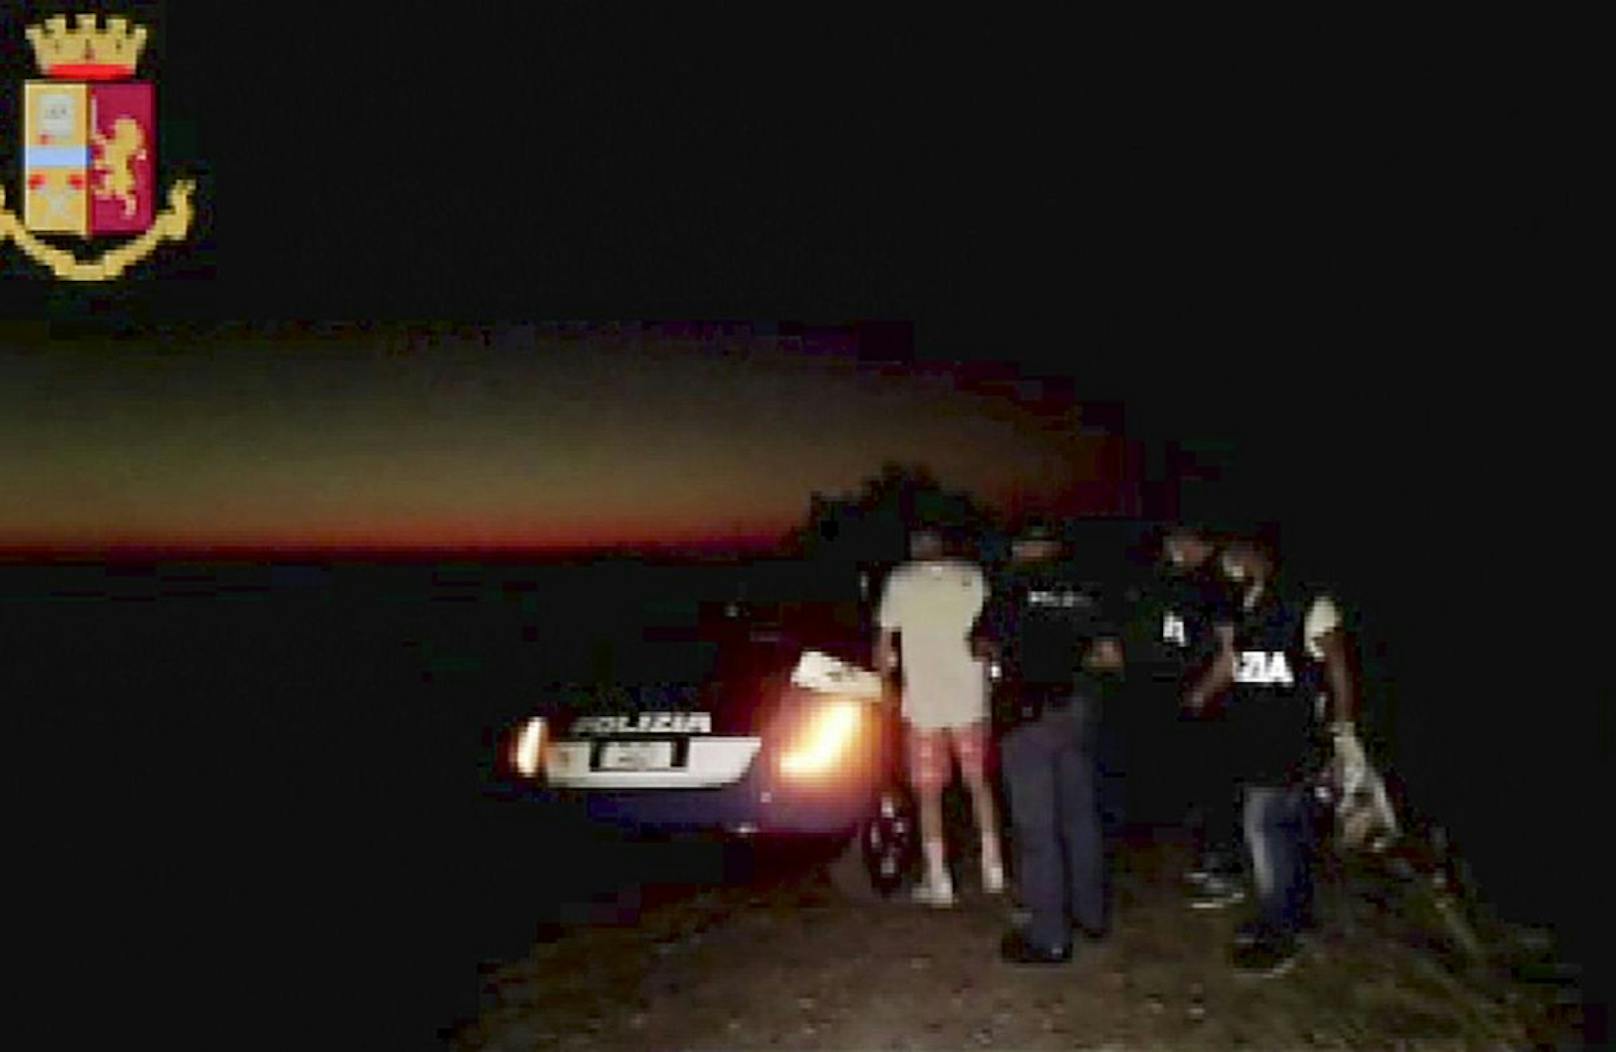 Die italienische Polizei nimmt in der Nacht auf Freitag einen Mann fest. Er soll an der Vergewaltigung zweier minderjähriger britischer Touristinnen beteiligt gewesen sein.